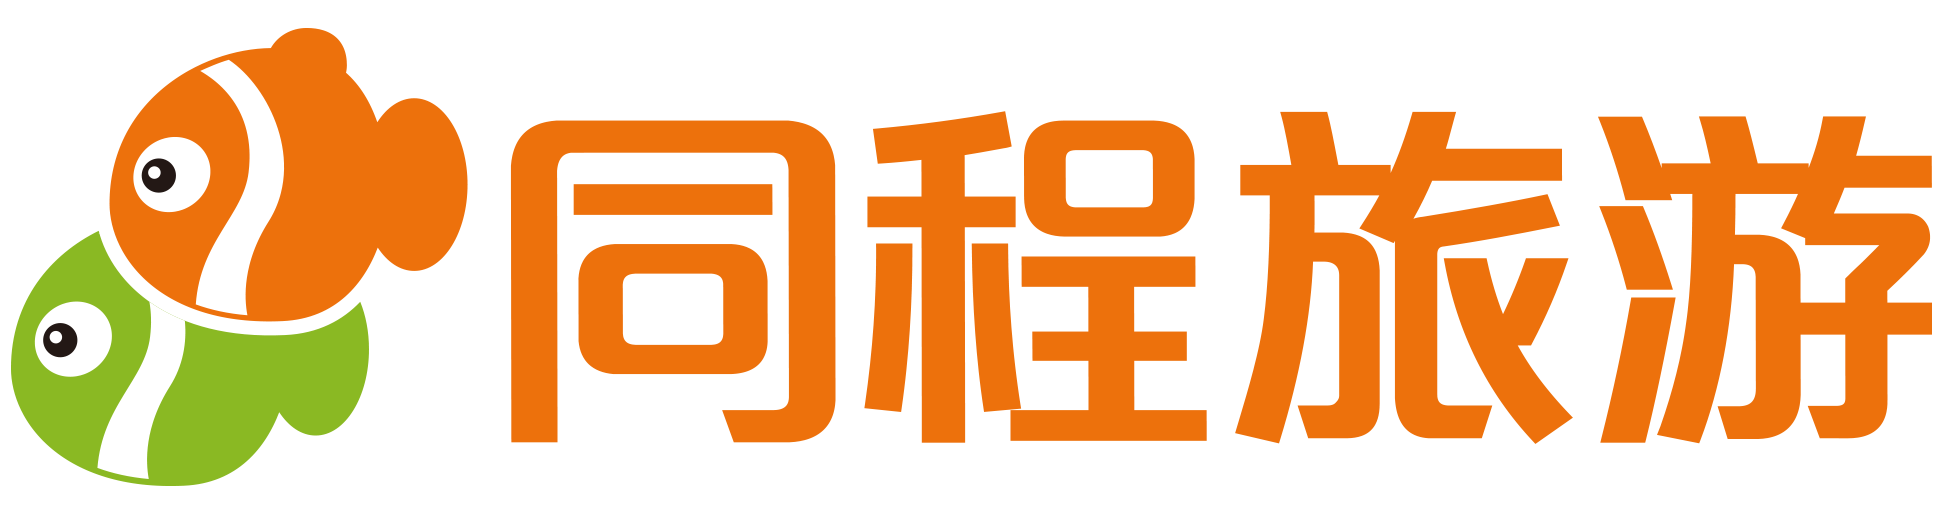 同程旅游logo图片